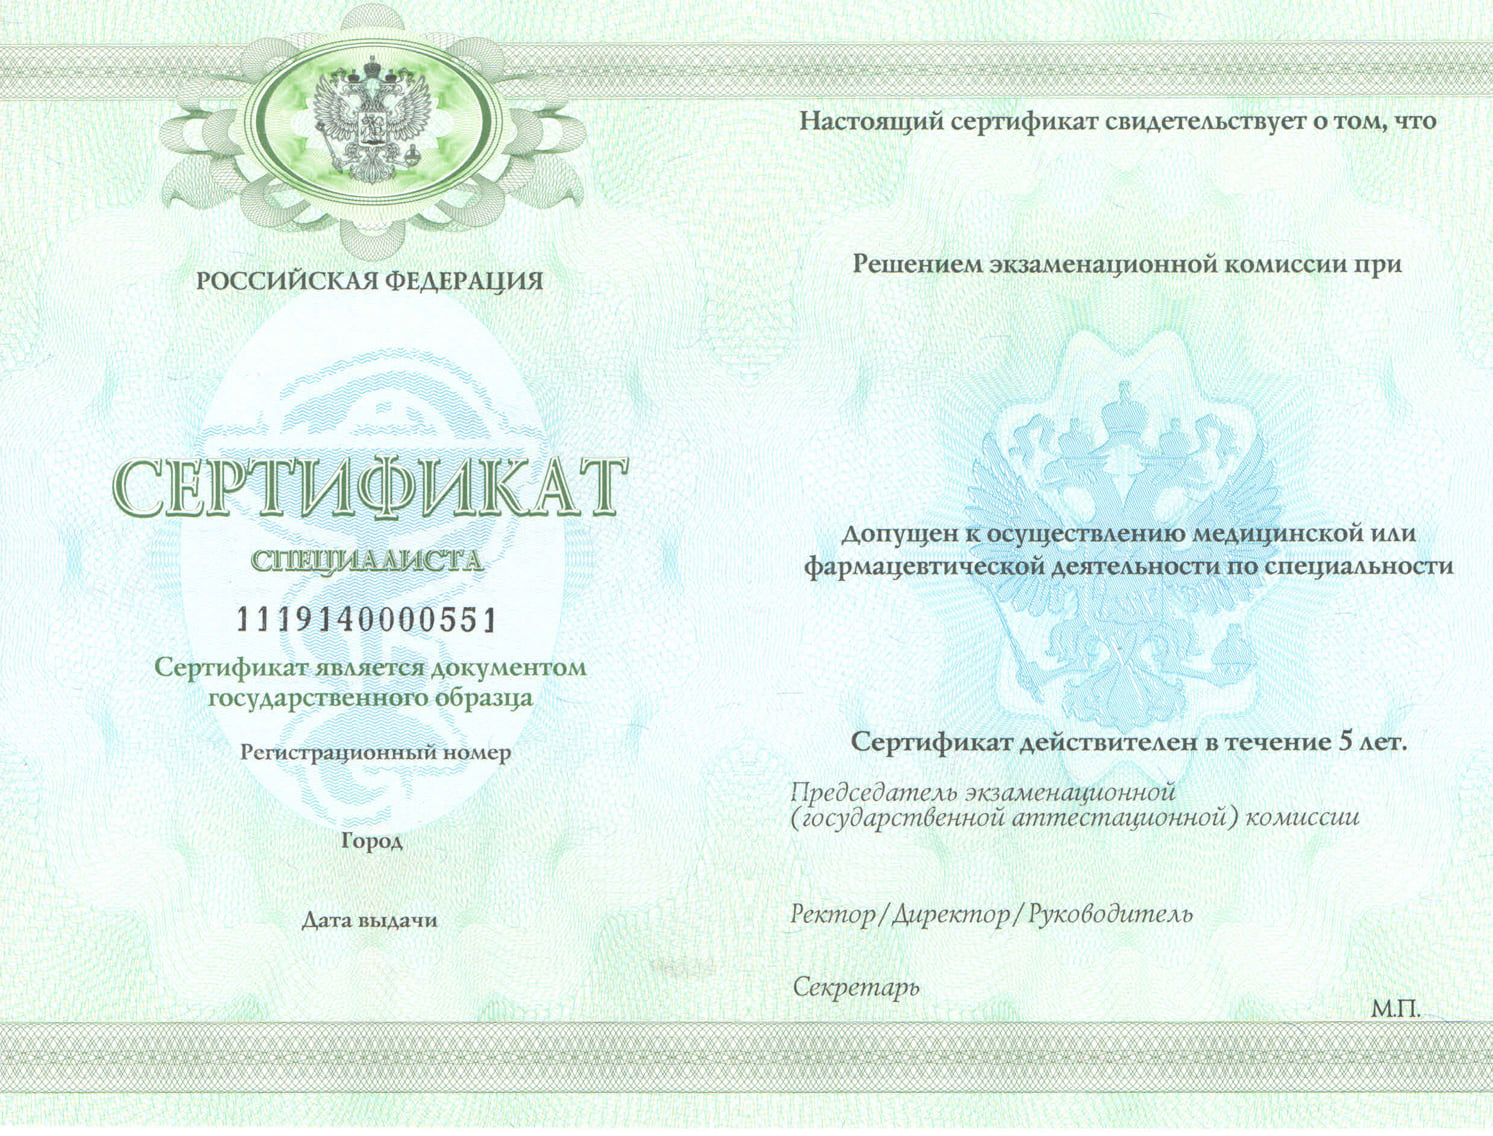 Сертификат врача специалиста